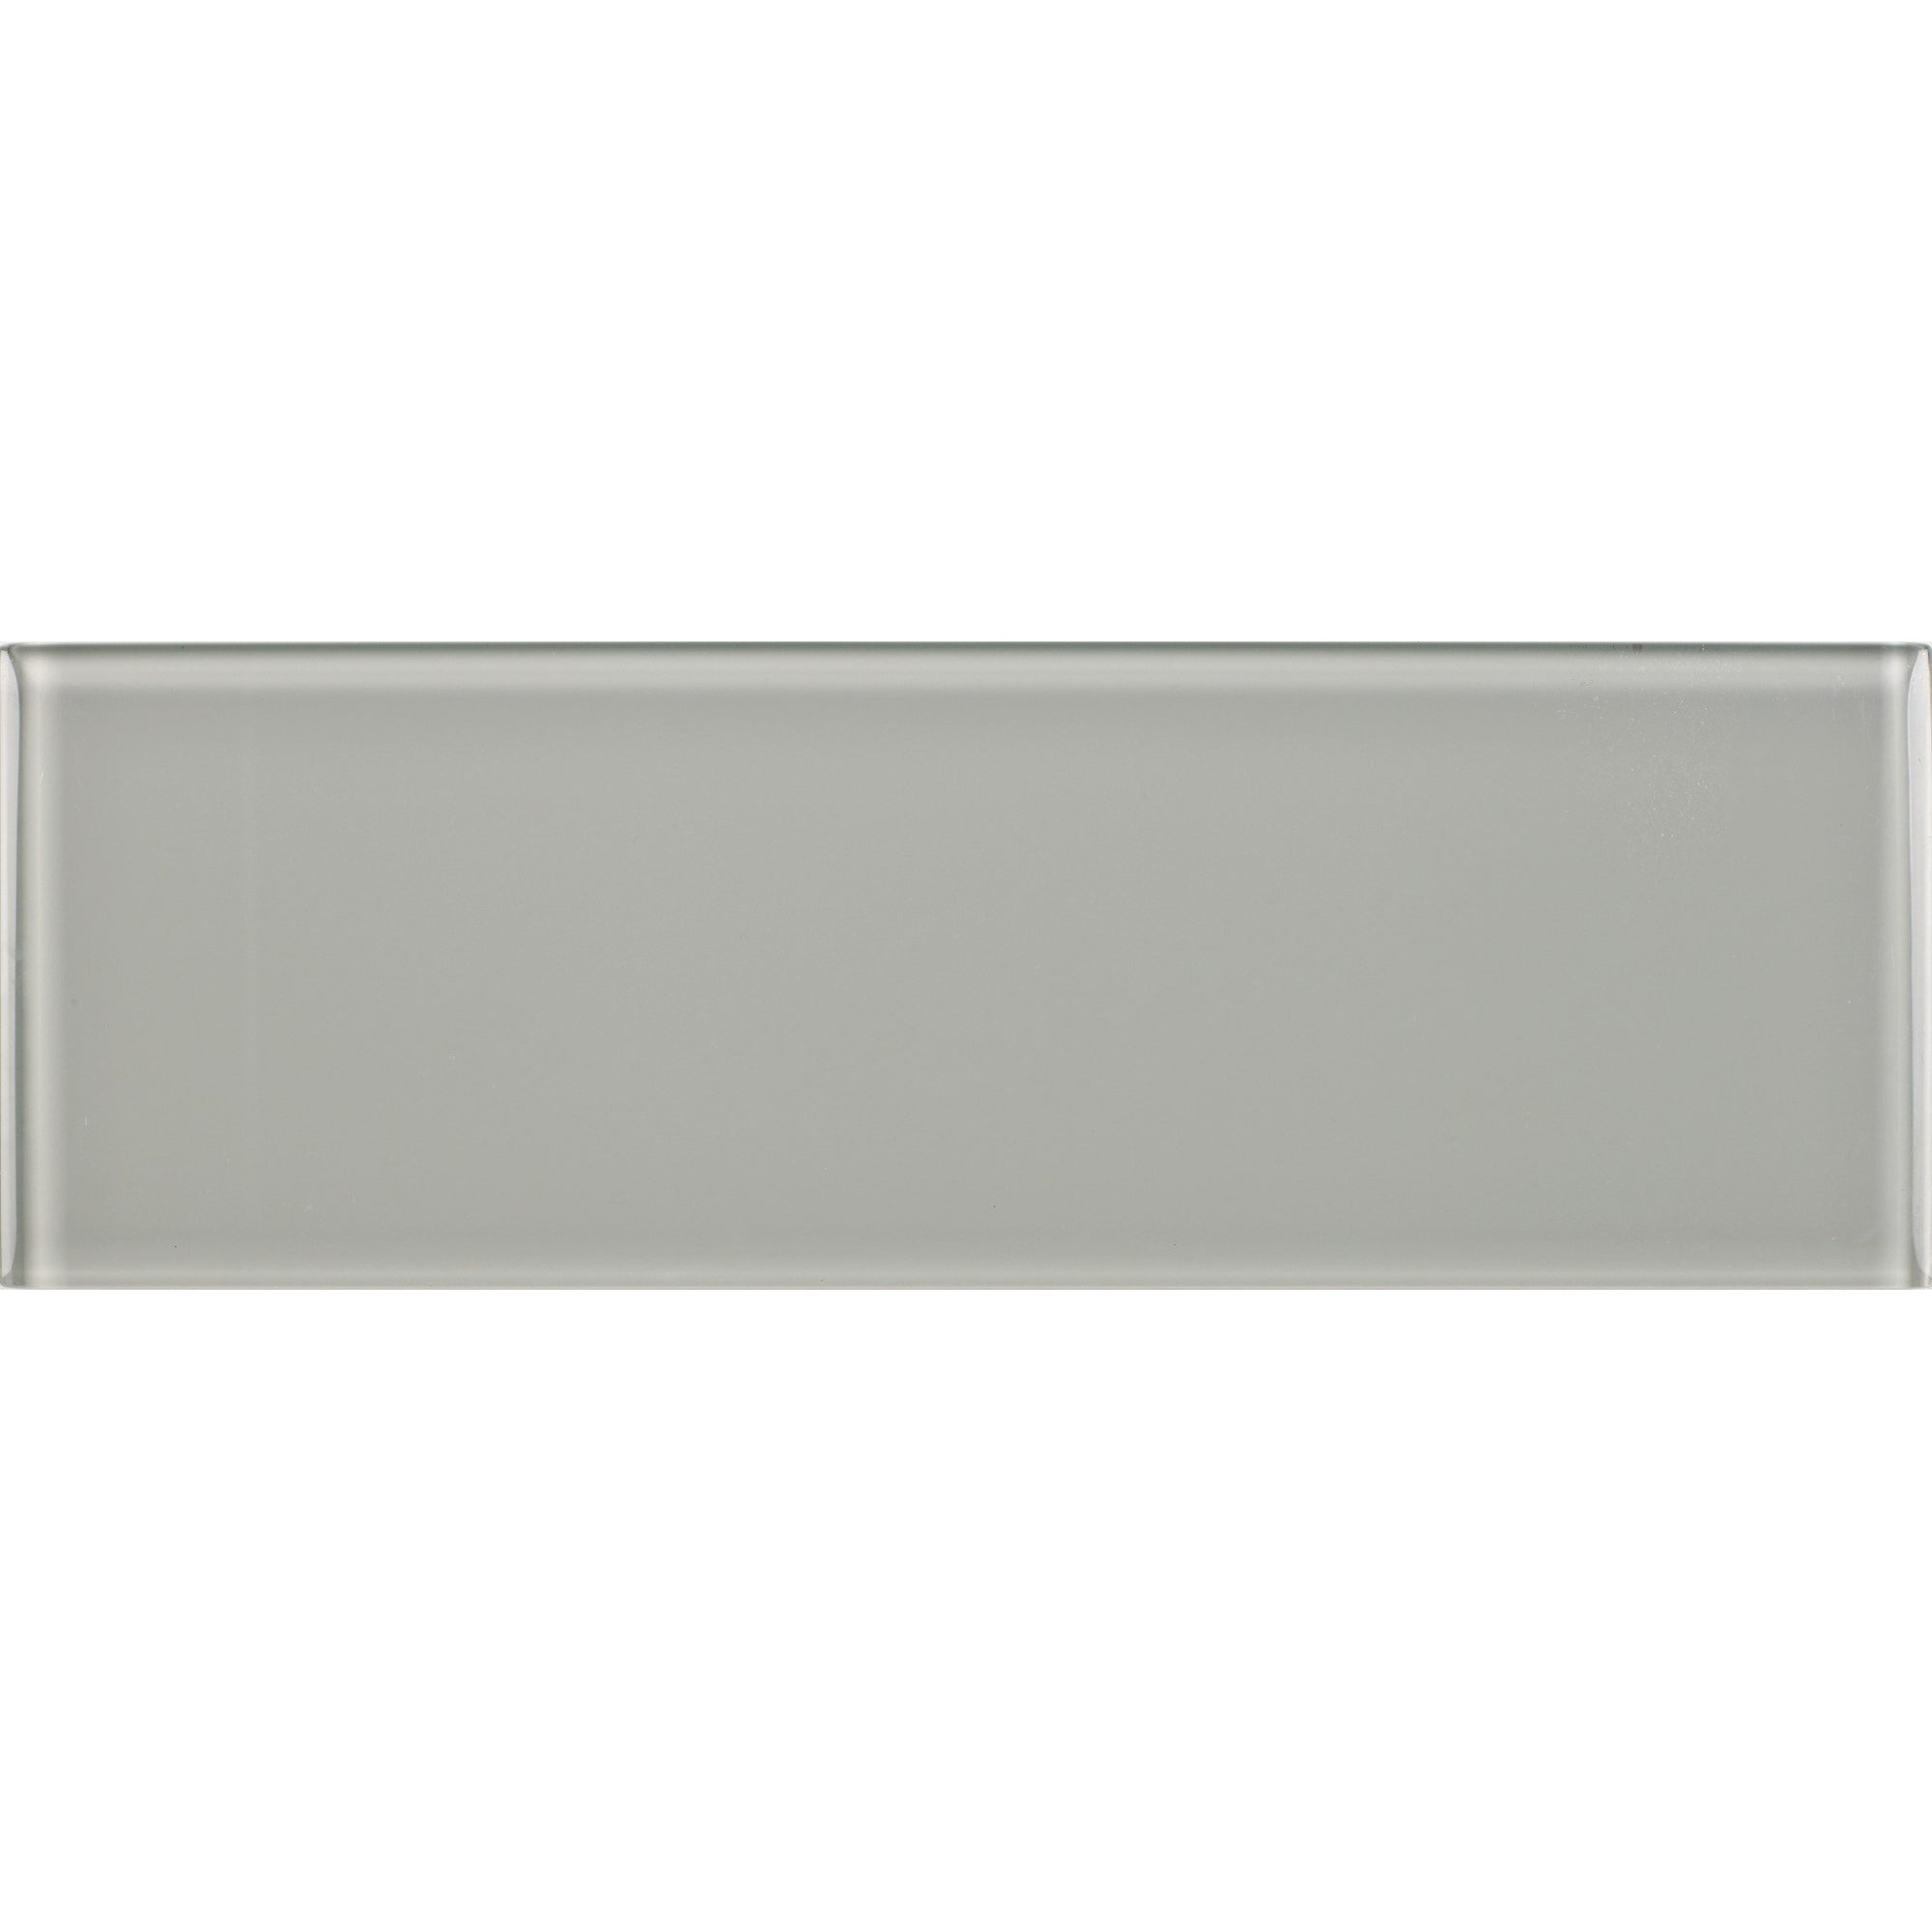 Arizona Tile - Islandia Series 4" x 12" Glass Wall Tile - Tinos Glossy